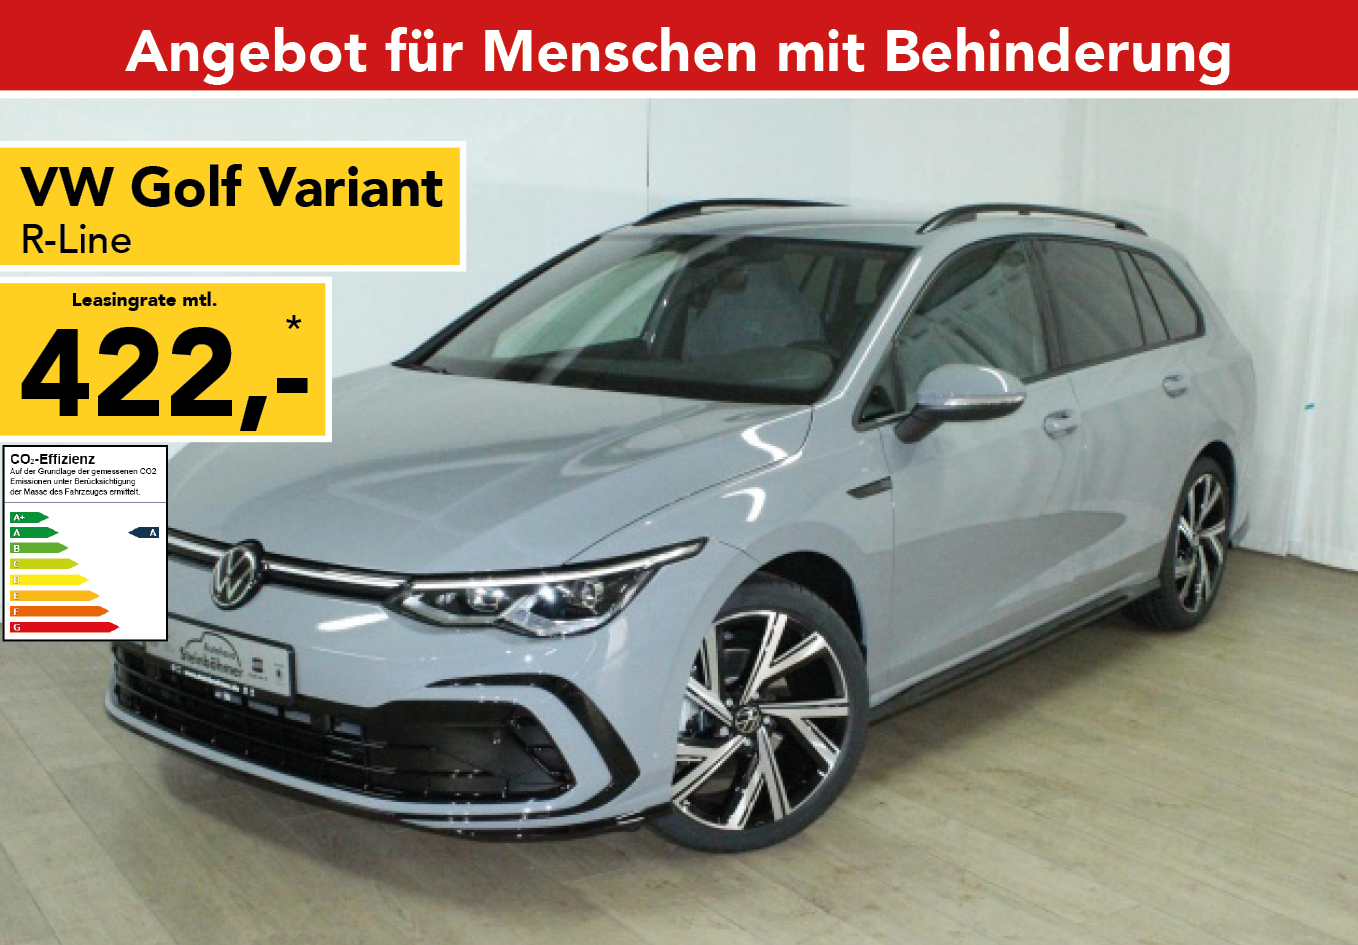 kjole få scarp VW Golf Variant ab EUR 283 mtl. für Menschen mit Behinderung ▻ Top Leasing  Angebot für Menschen mit Behinderung